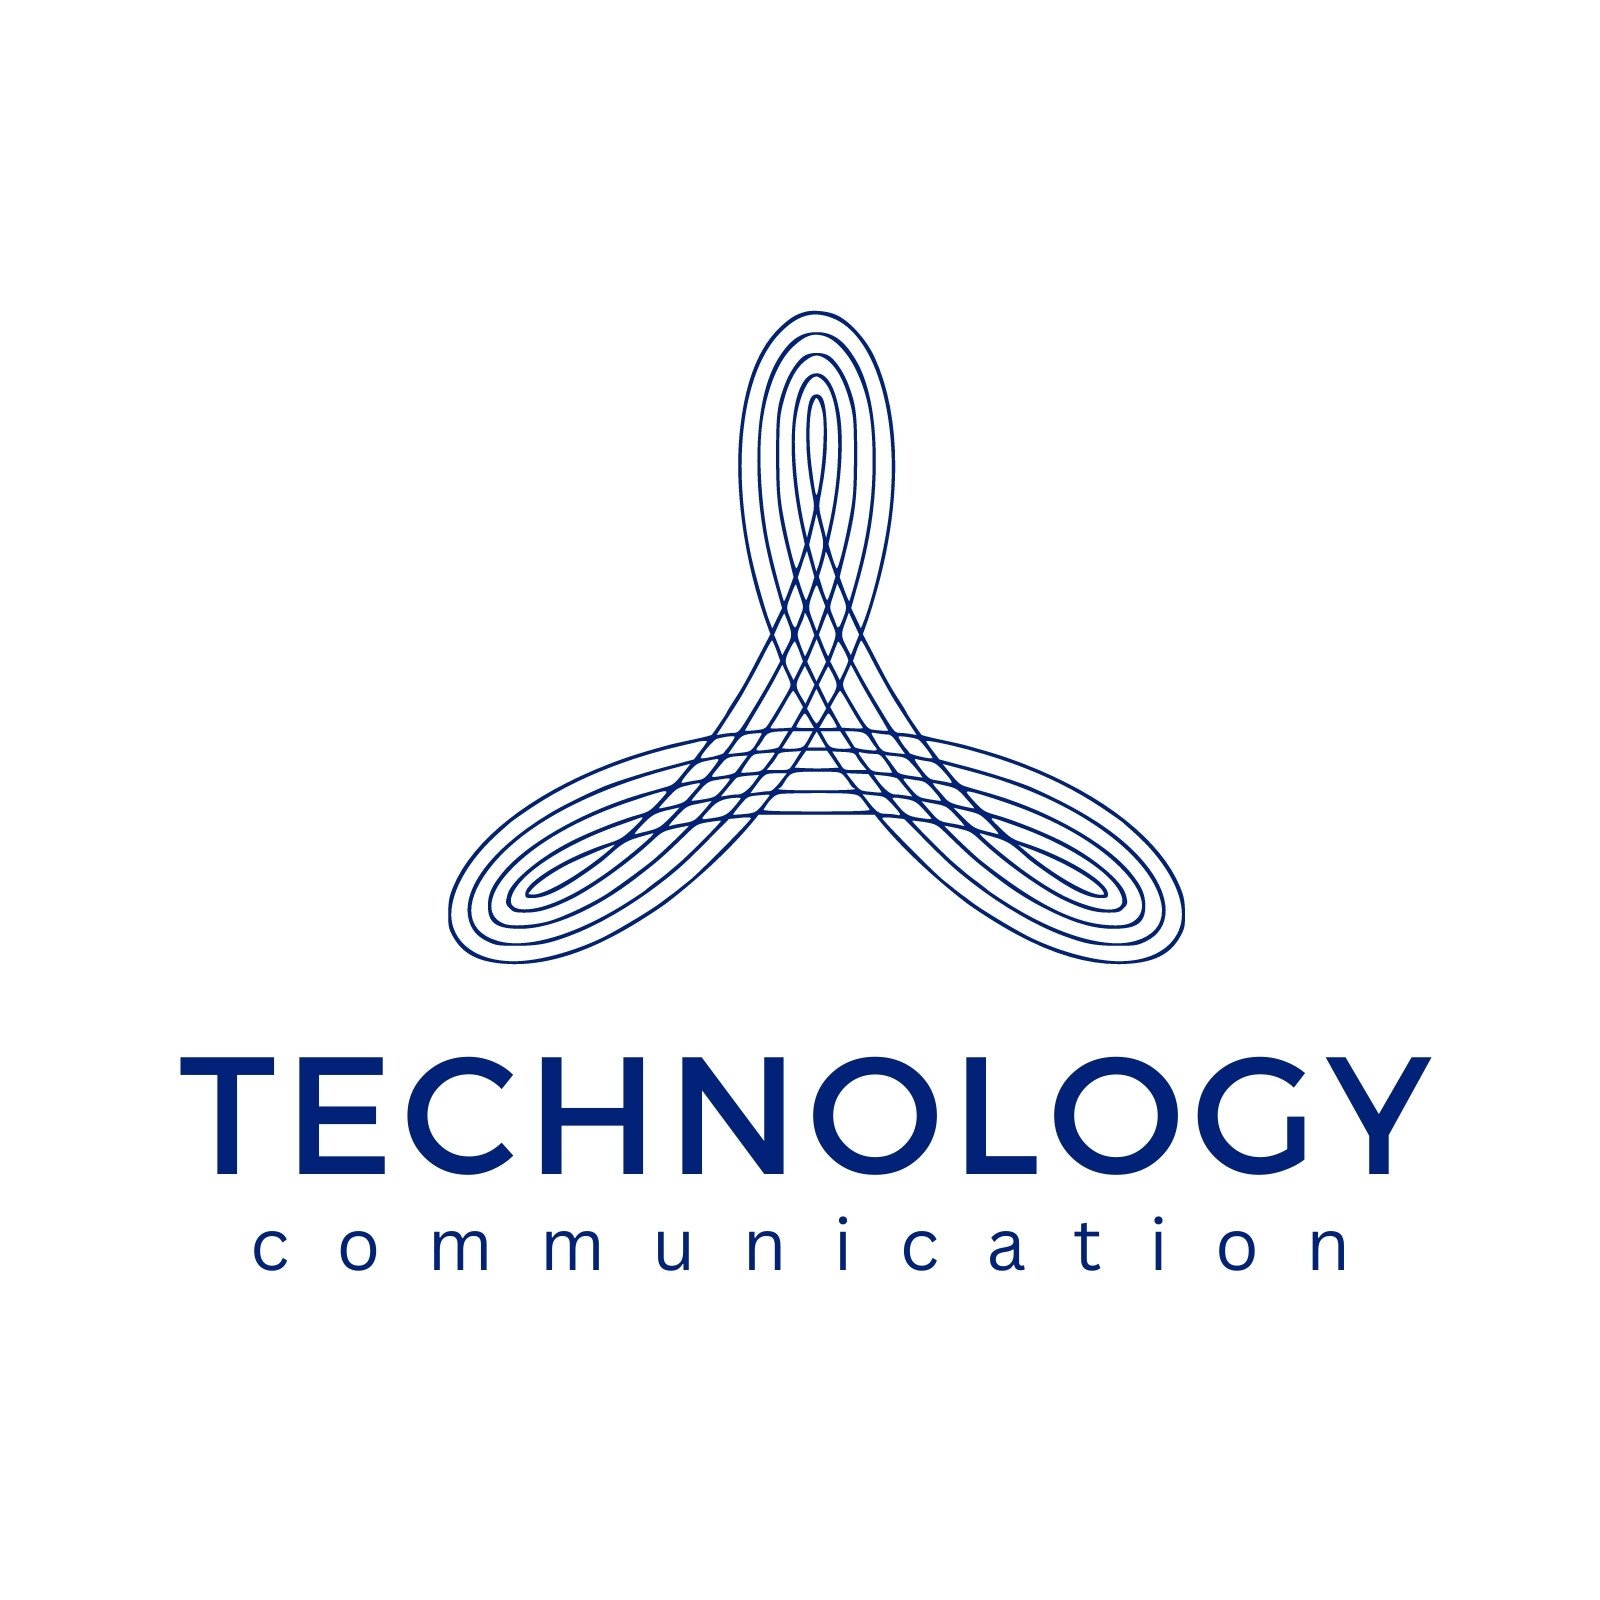 File:Daum communication logo.svg - Wikipedia